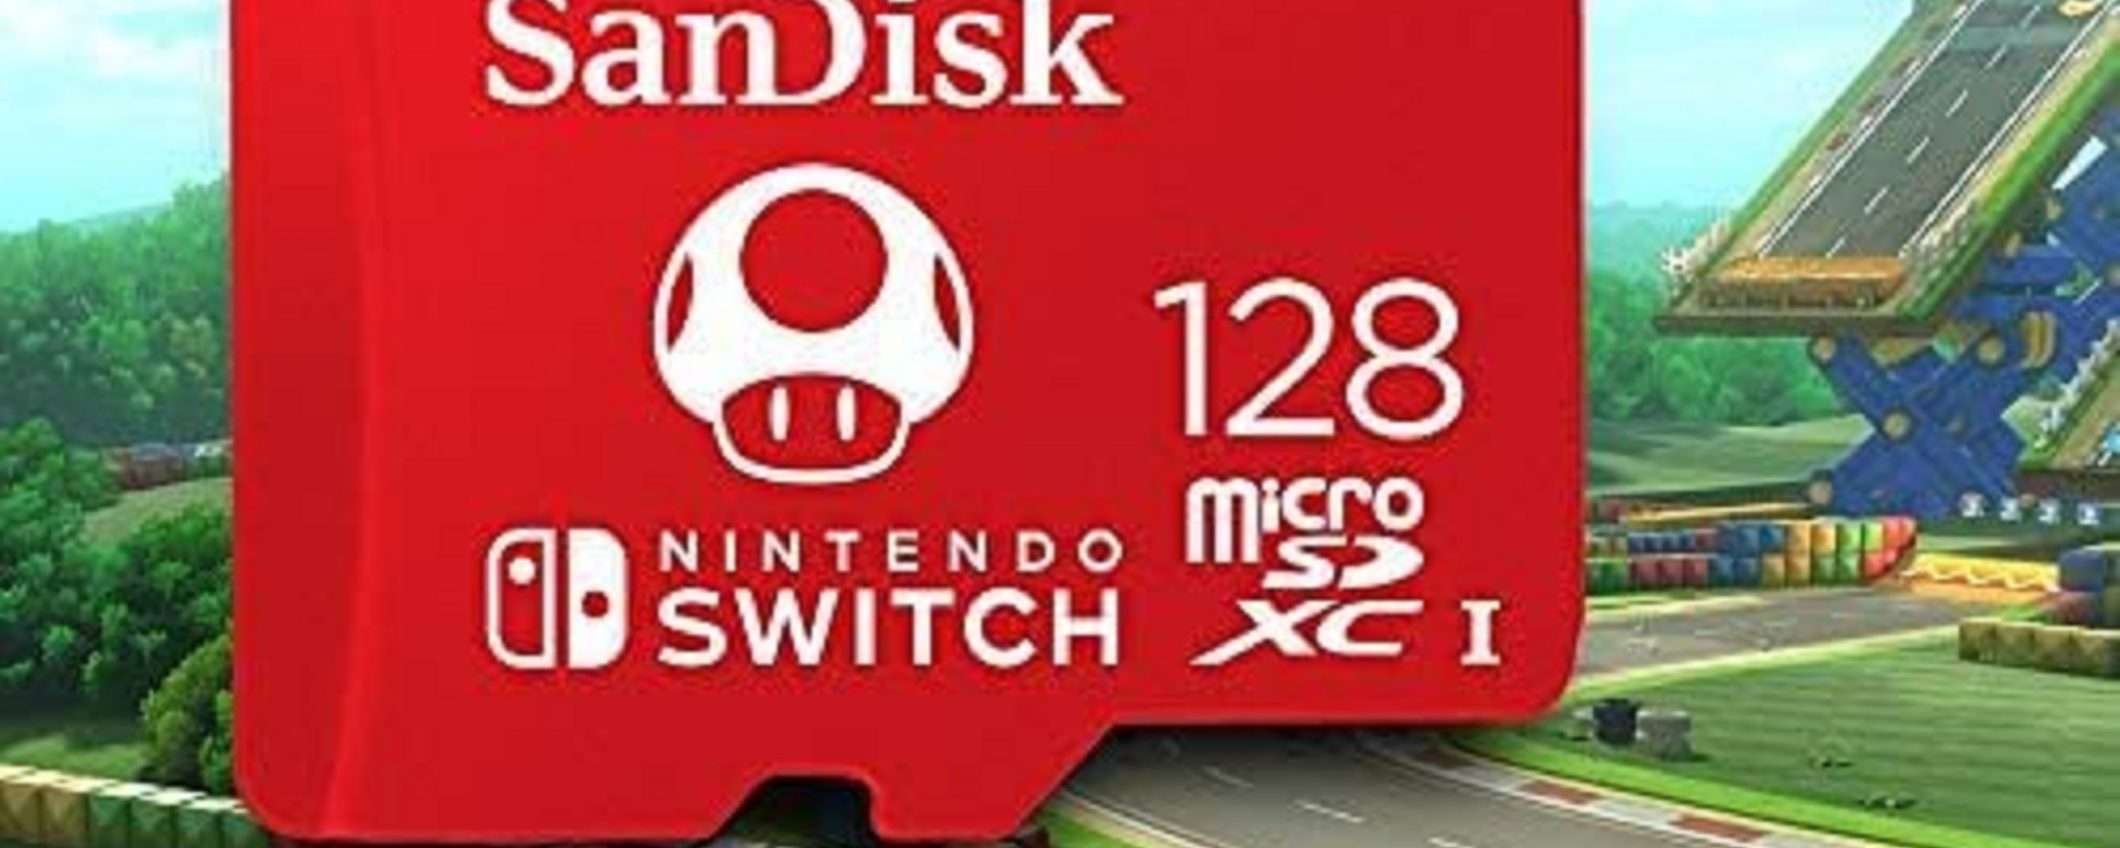 MicroSD SanDisk per Nintendo Switch da 128GB a soli 18€ su Amazon